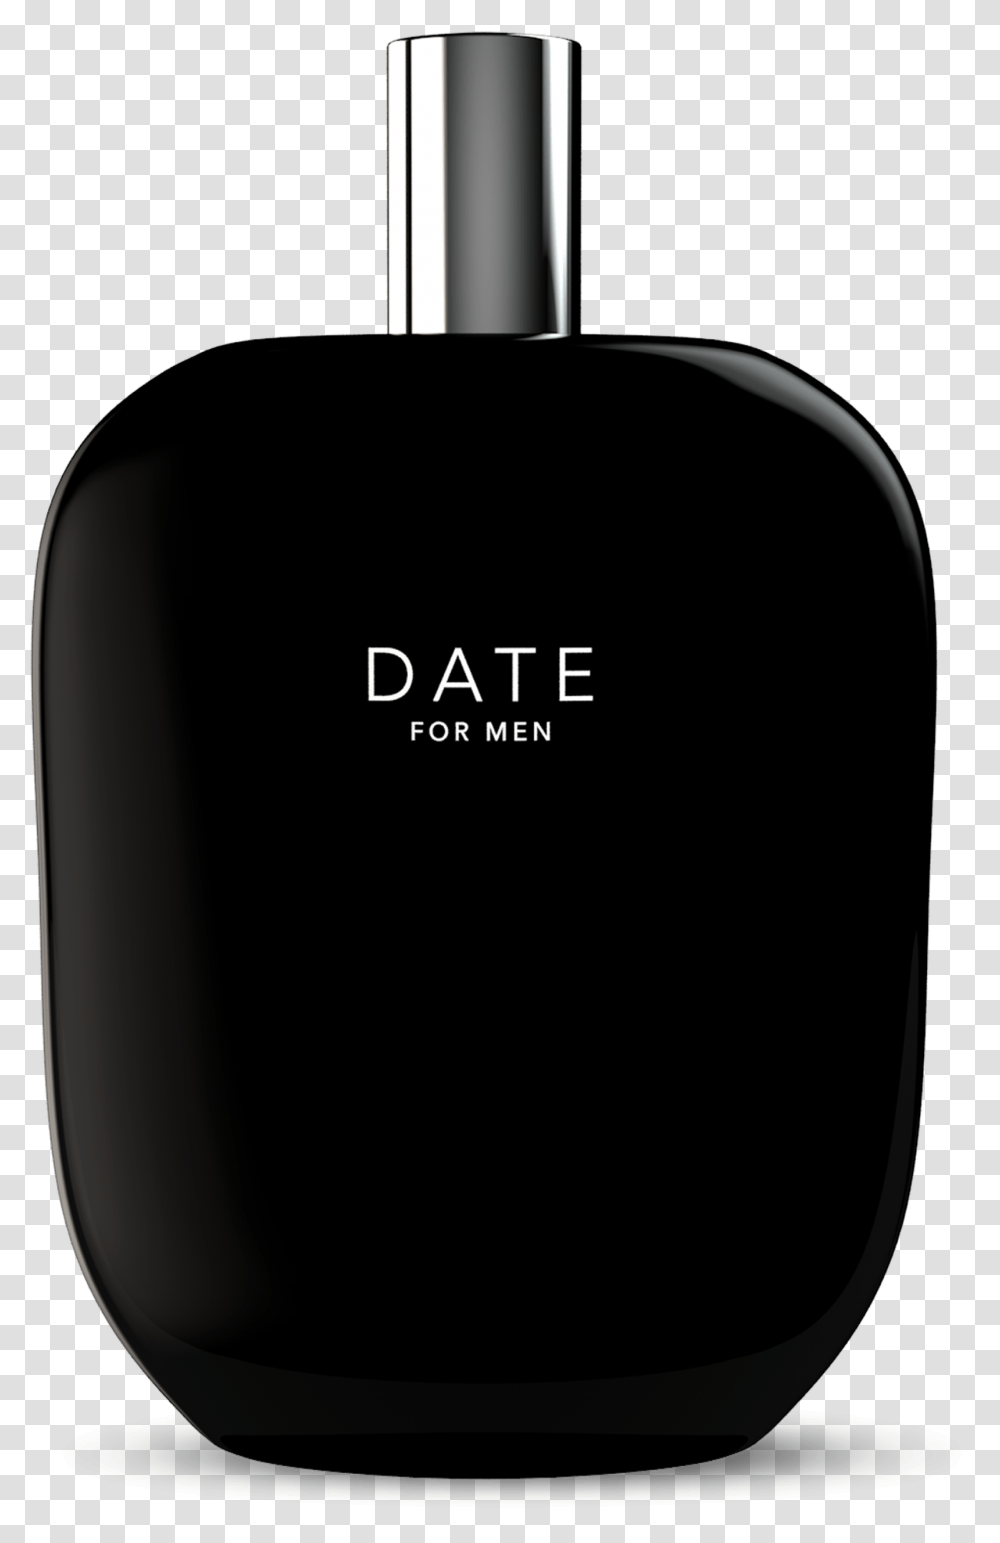 Date For Men Date For Men Fragrance, Bottle, Cosmetics, Mouse, Hardware Transparent Png